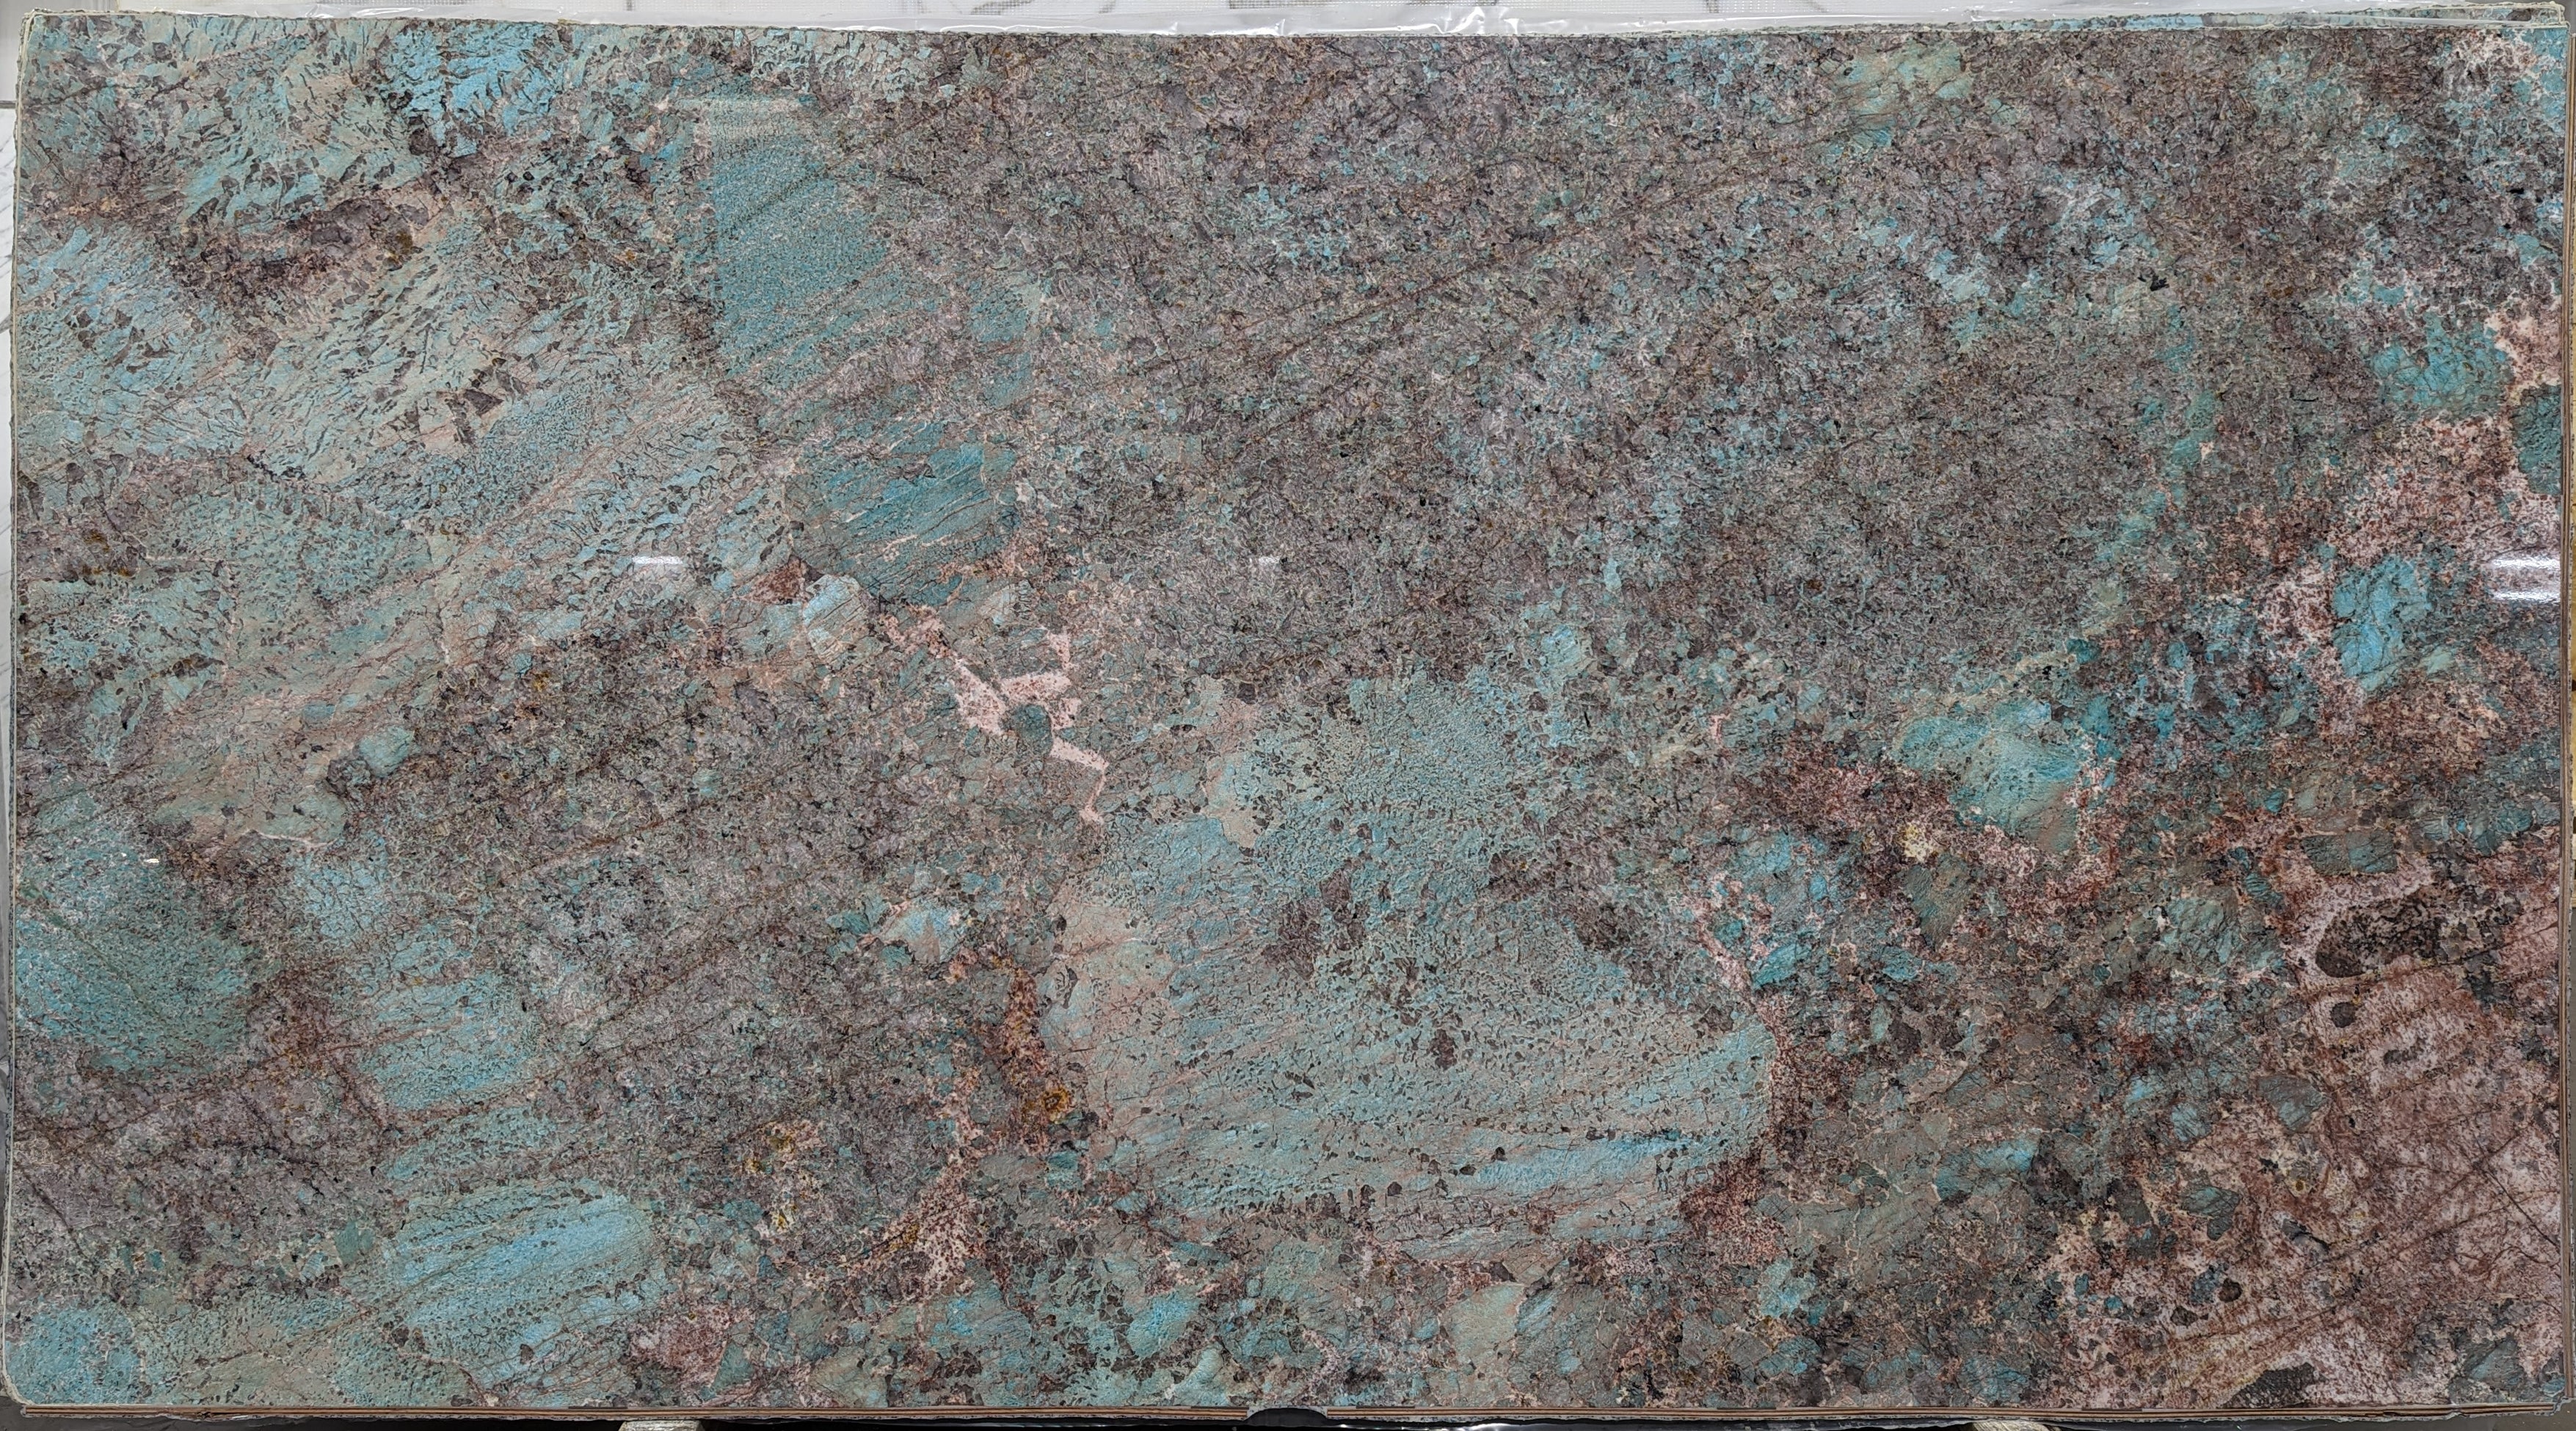  Amazonite Quartzite Slab 3/4  Polished Stone - 20921#30 -  64X119 